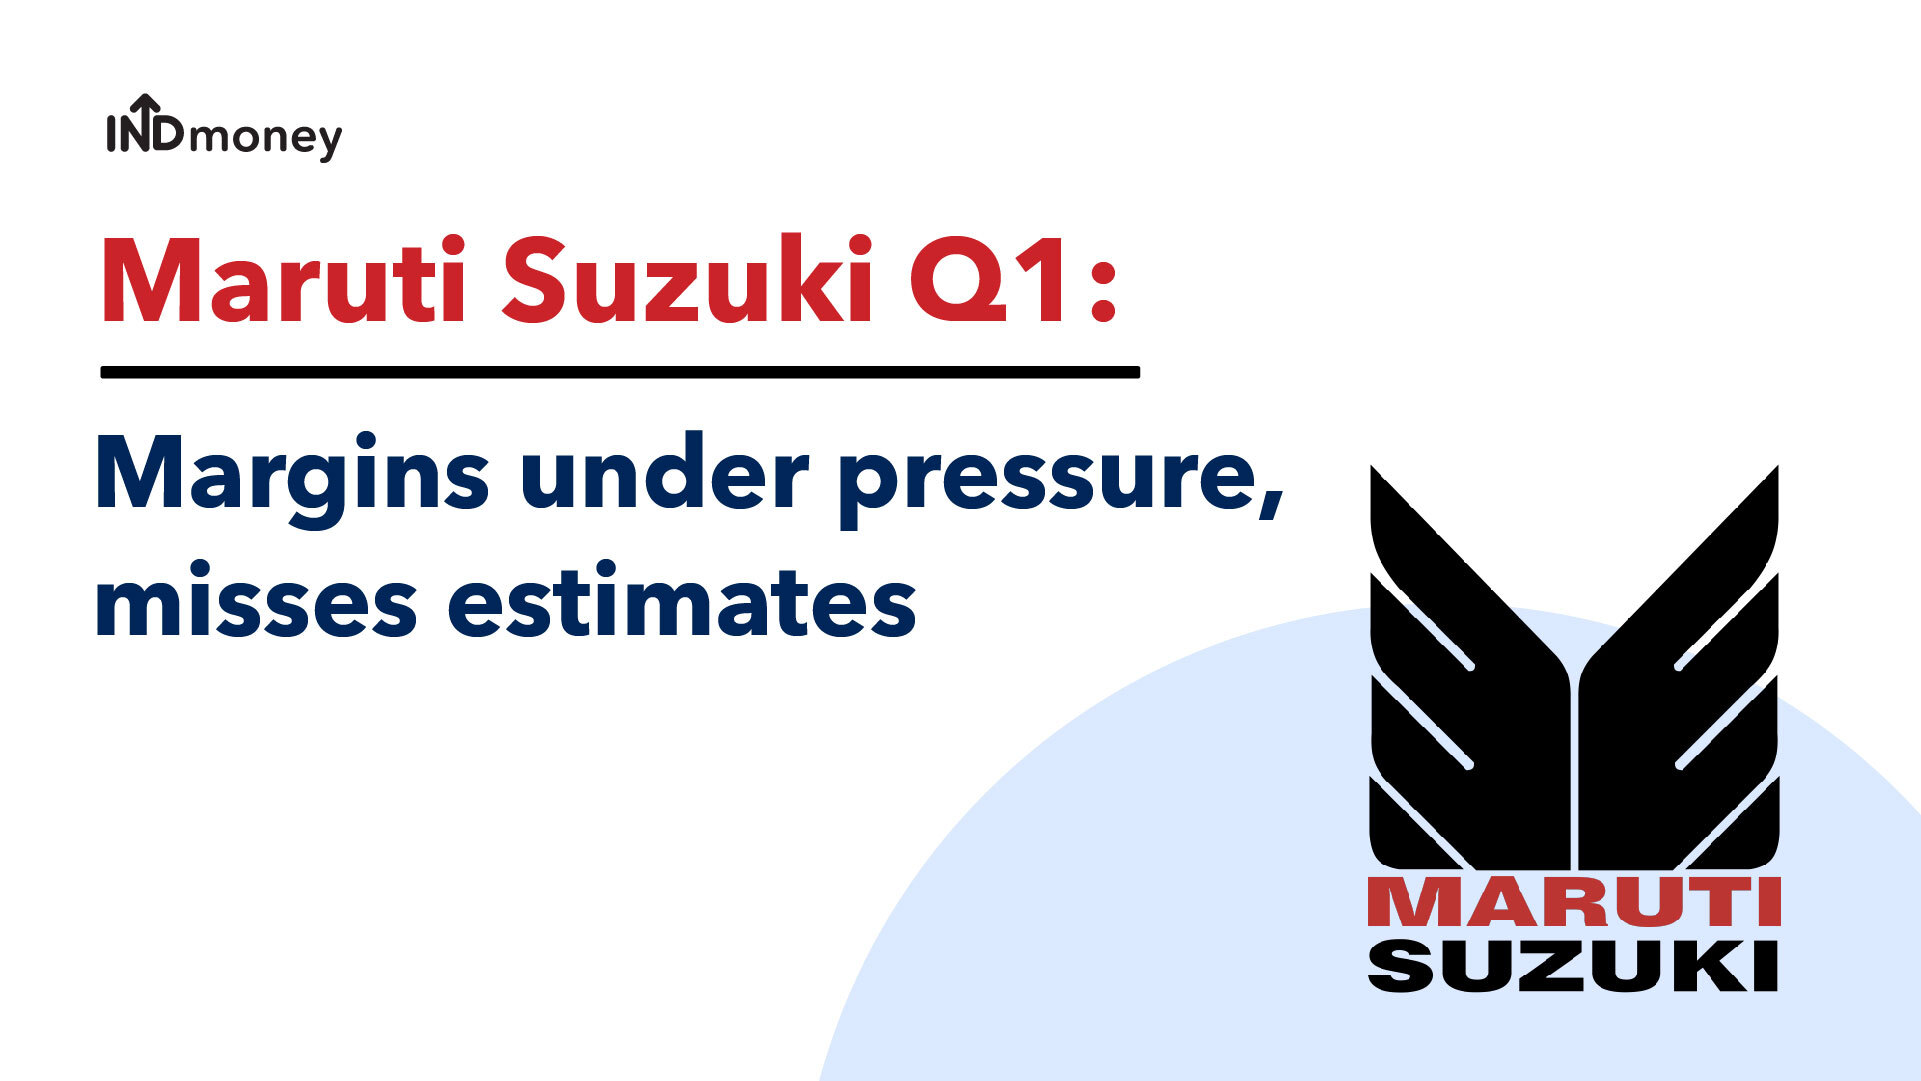 Maruti Suzuki Q1 Results: Maruti Quarterly Earnings, News